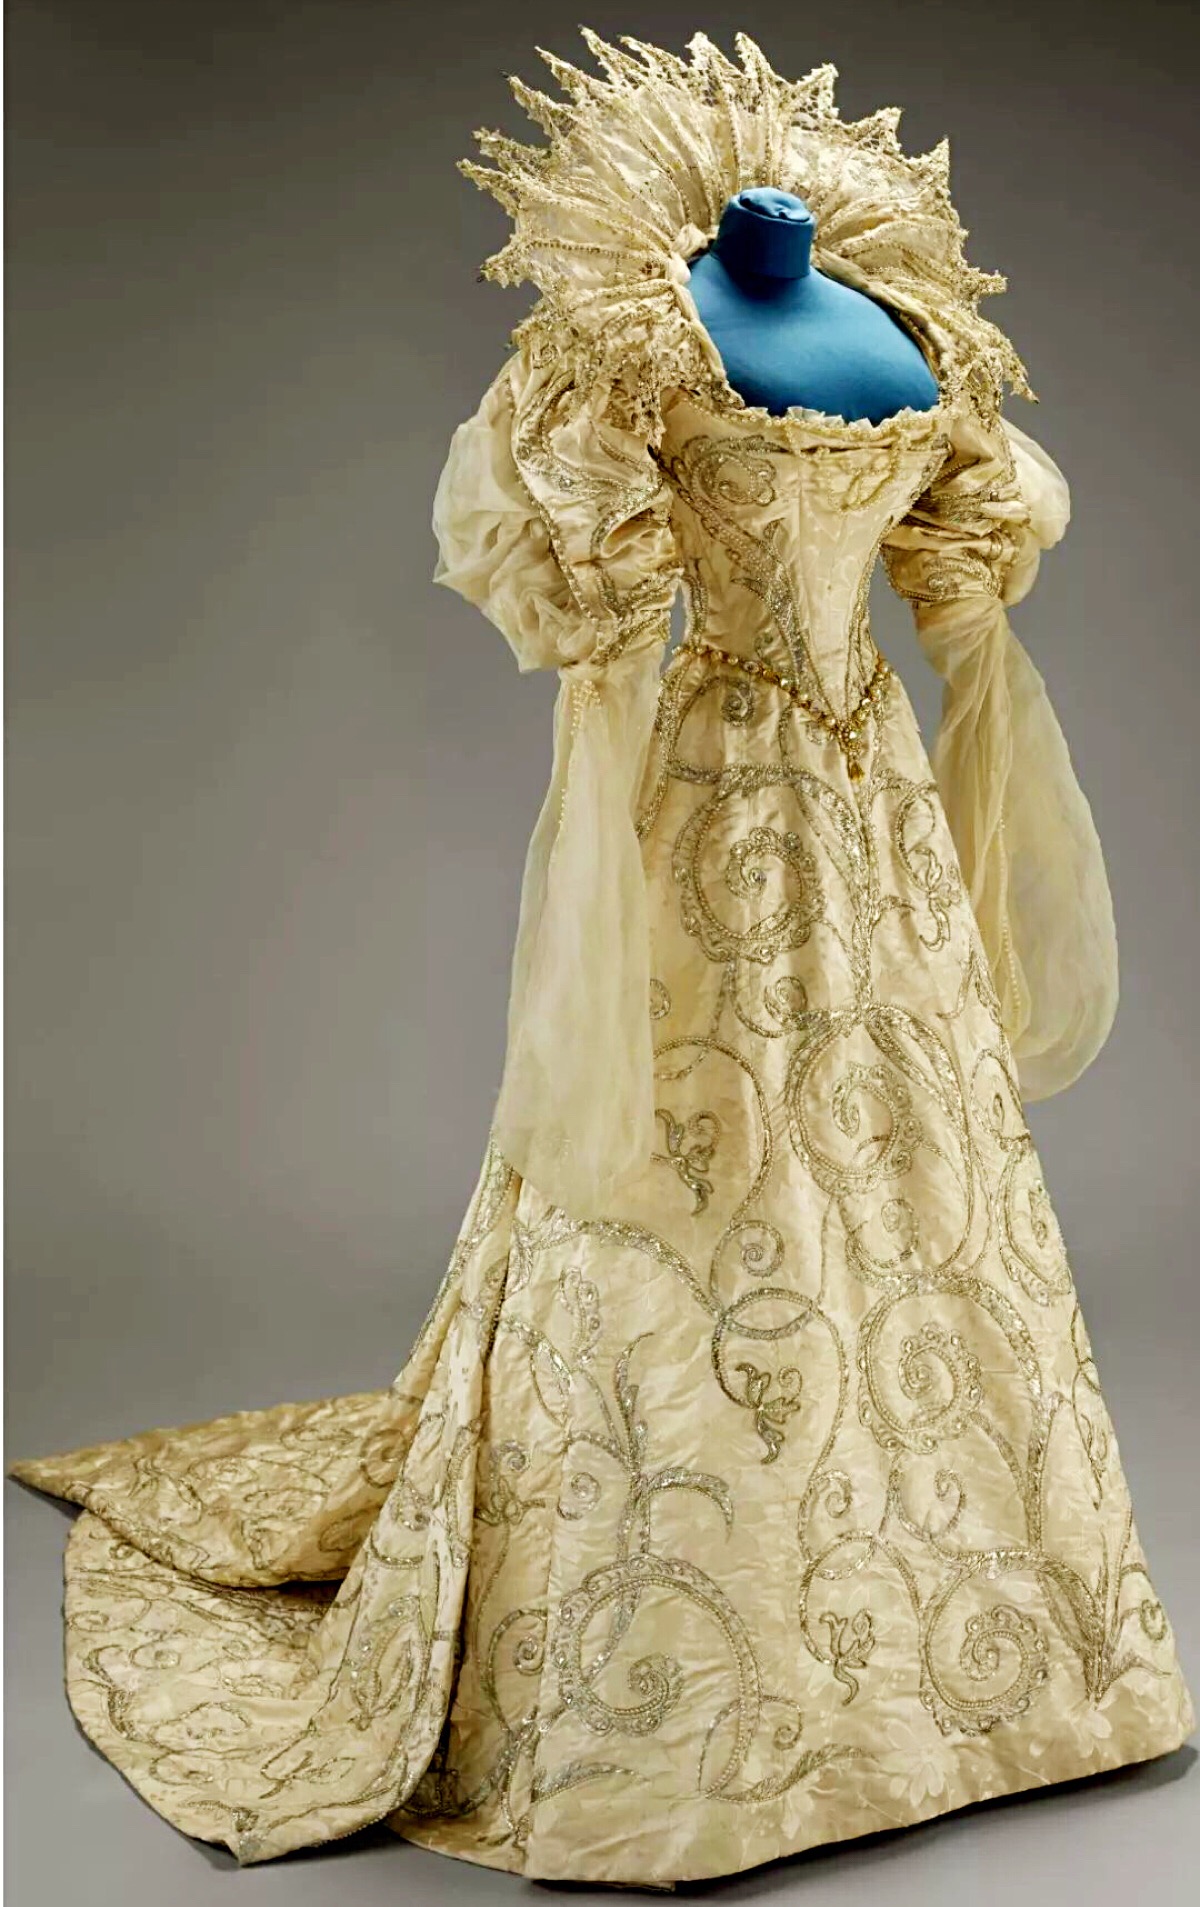 六世波特兰公爵夫人扮演16世纪的萨沃伊公爵夫人,服装由巴黎worth打造